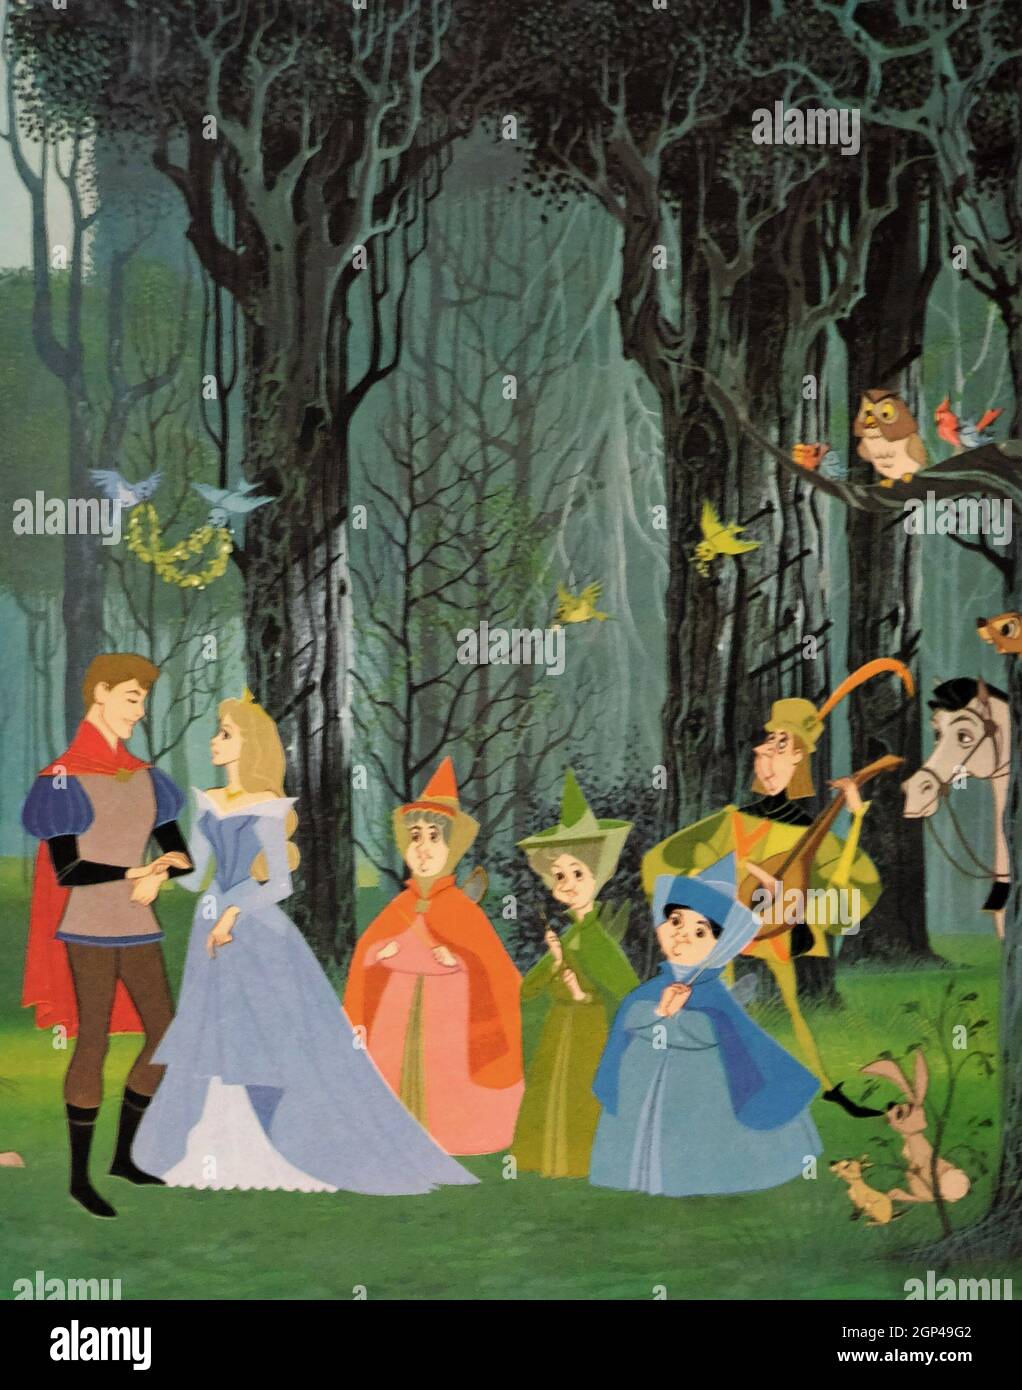 LA BELLEZA DEL SUEÑO, de izquierda a derecha, el príncipe Phillip (con la  voz de Bill Shirley), la princesa Aurora (con la voz de Mary Costa), Flora  (con la voz de Verna